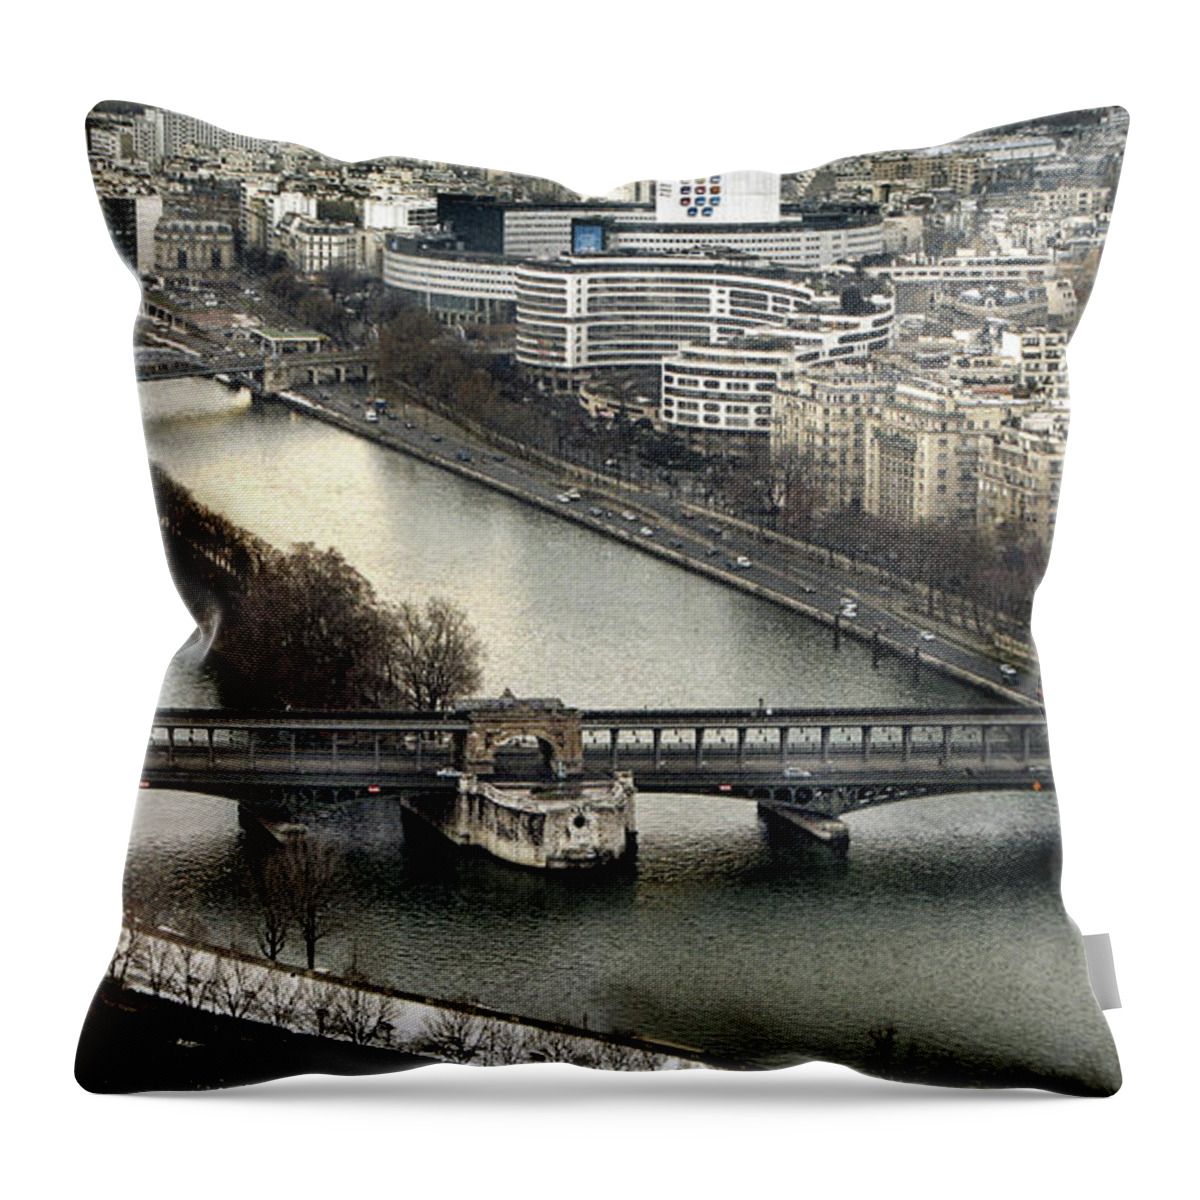 Seine Throw Pillow featuring the photograph The River Seine - Paris by Daliana Pacuraru